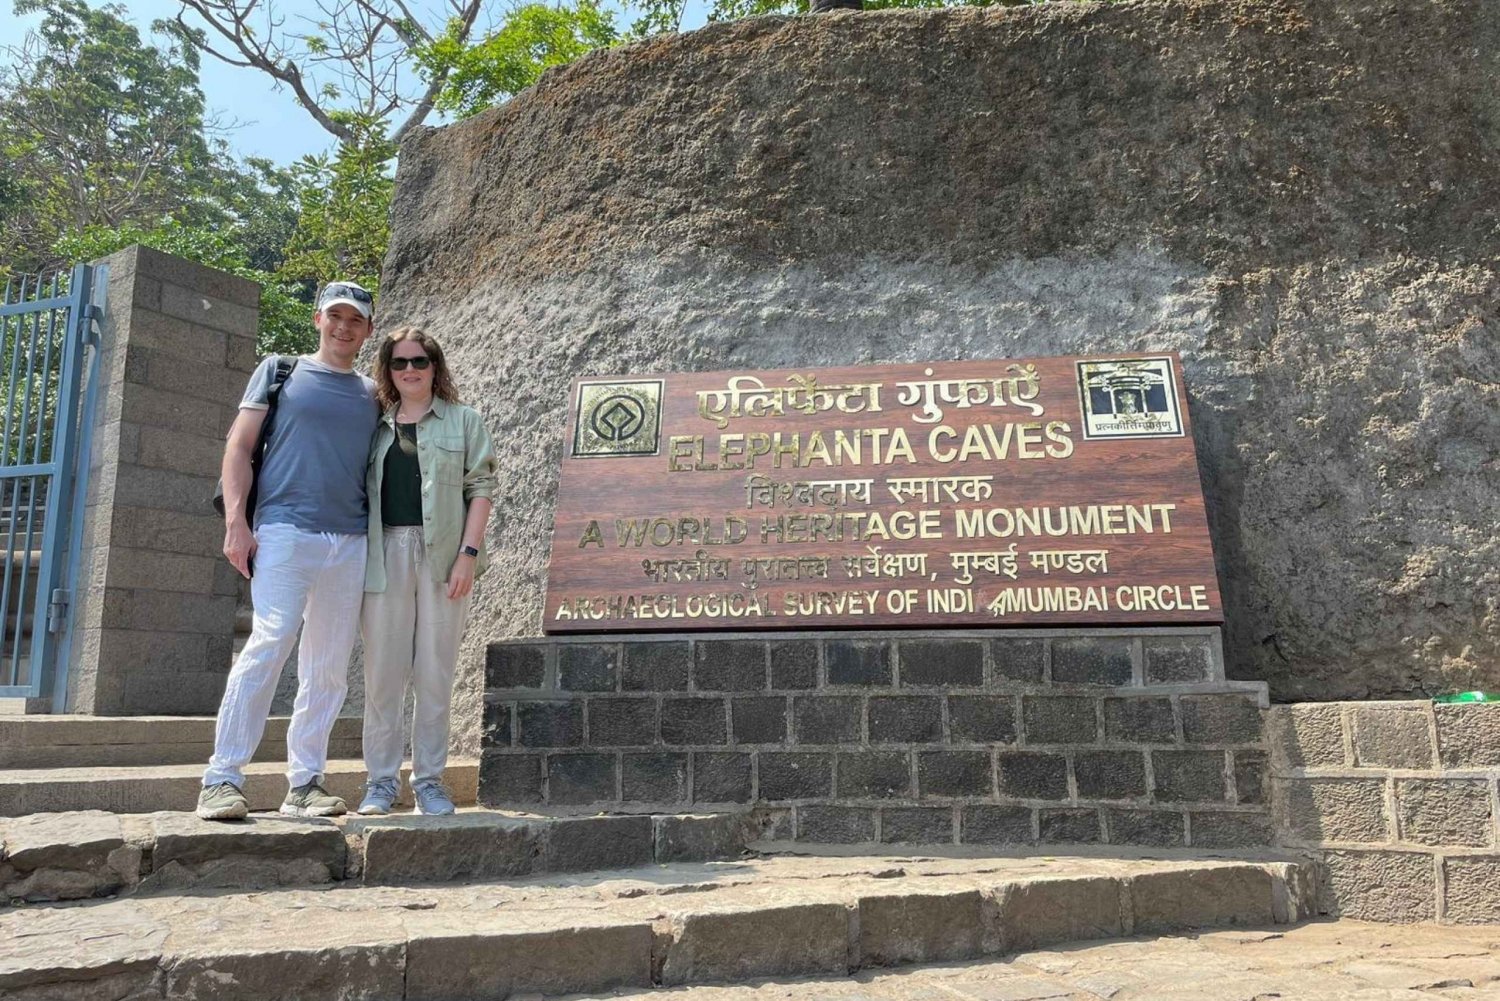 Mumbai: Guidet tur til Elephanta-øen og hulerne